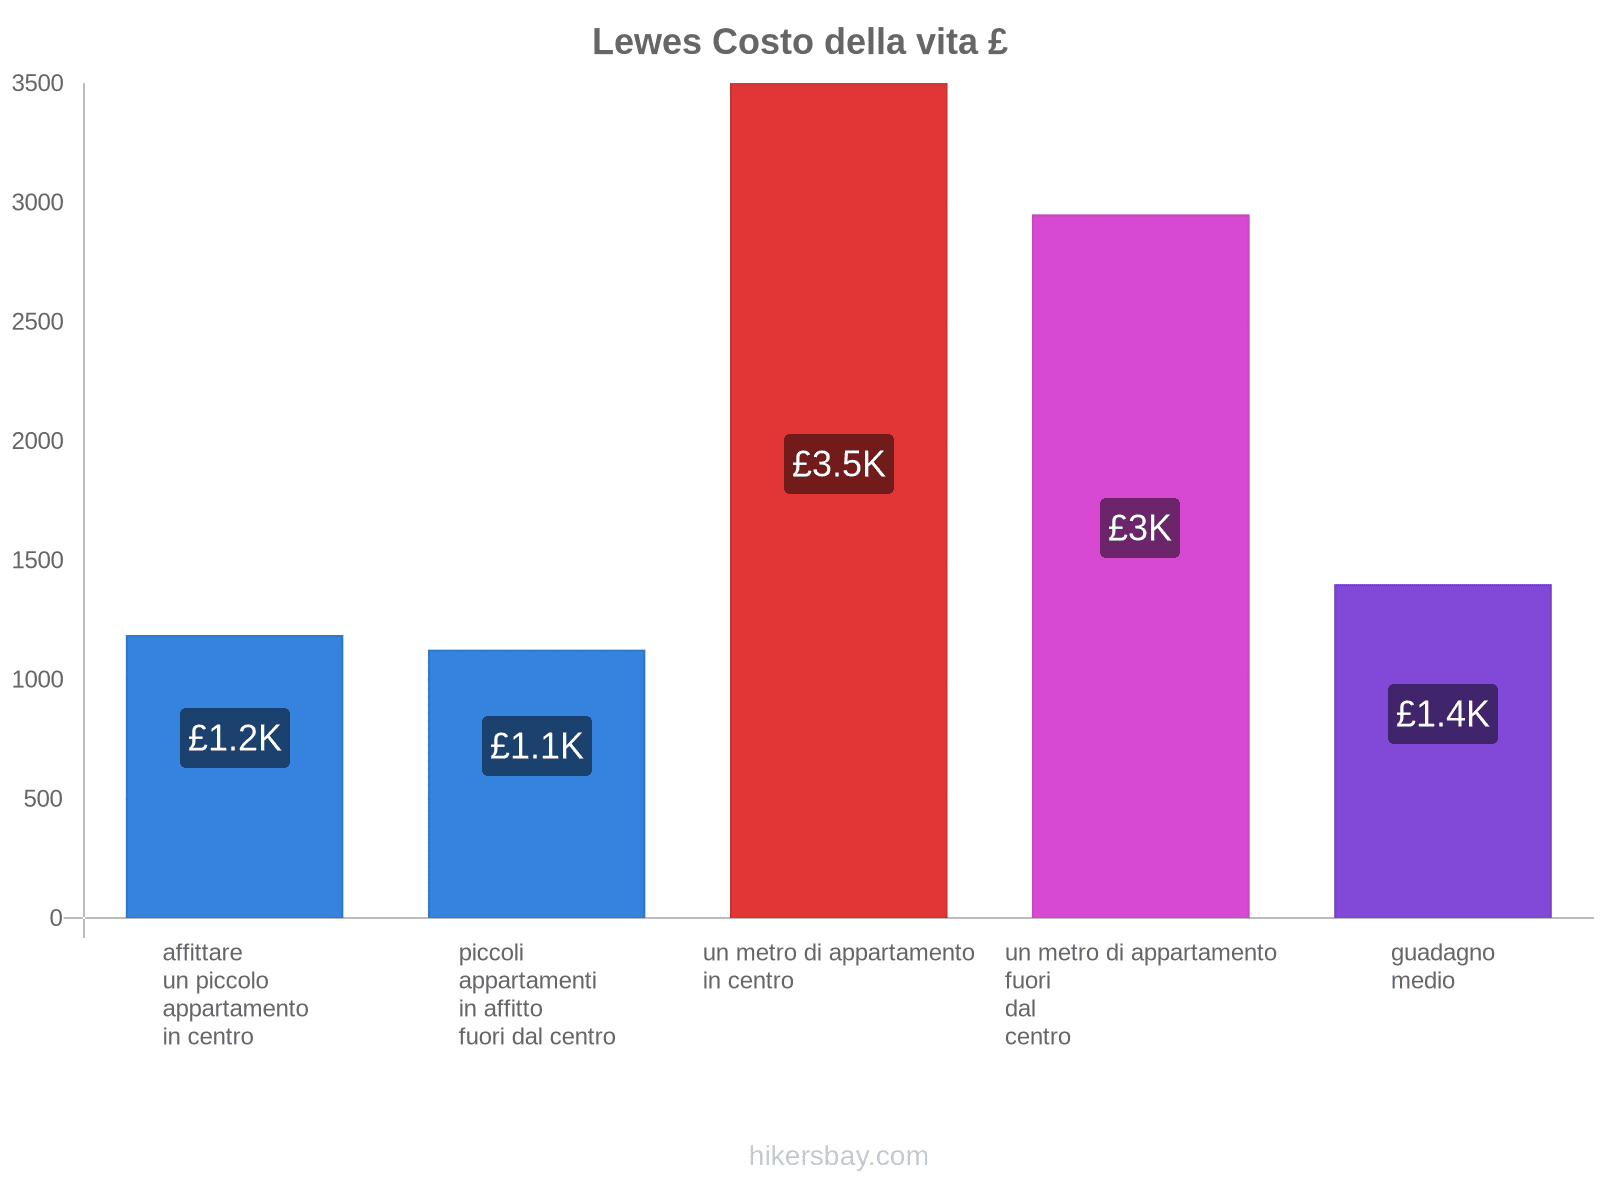 Lewes costo della vita hikersbay.com